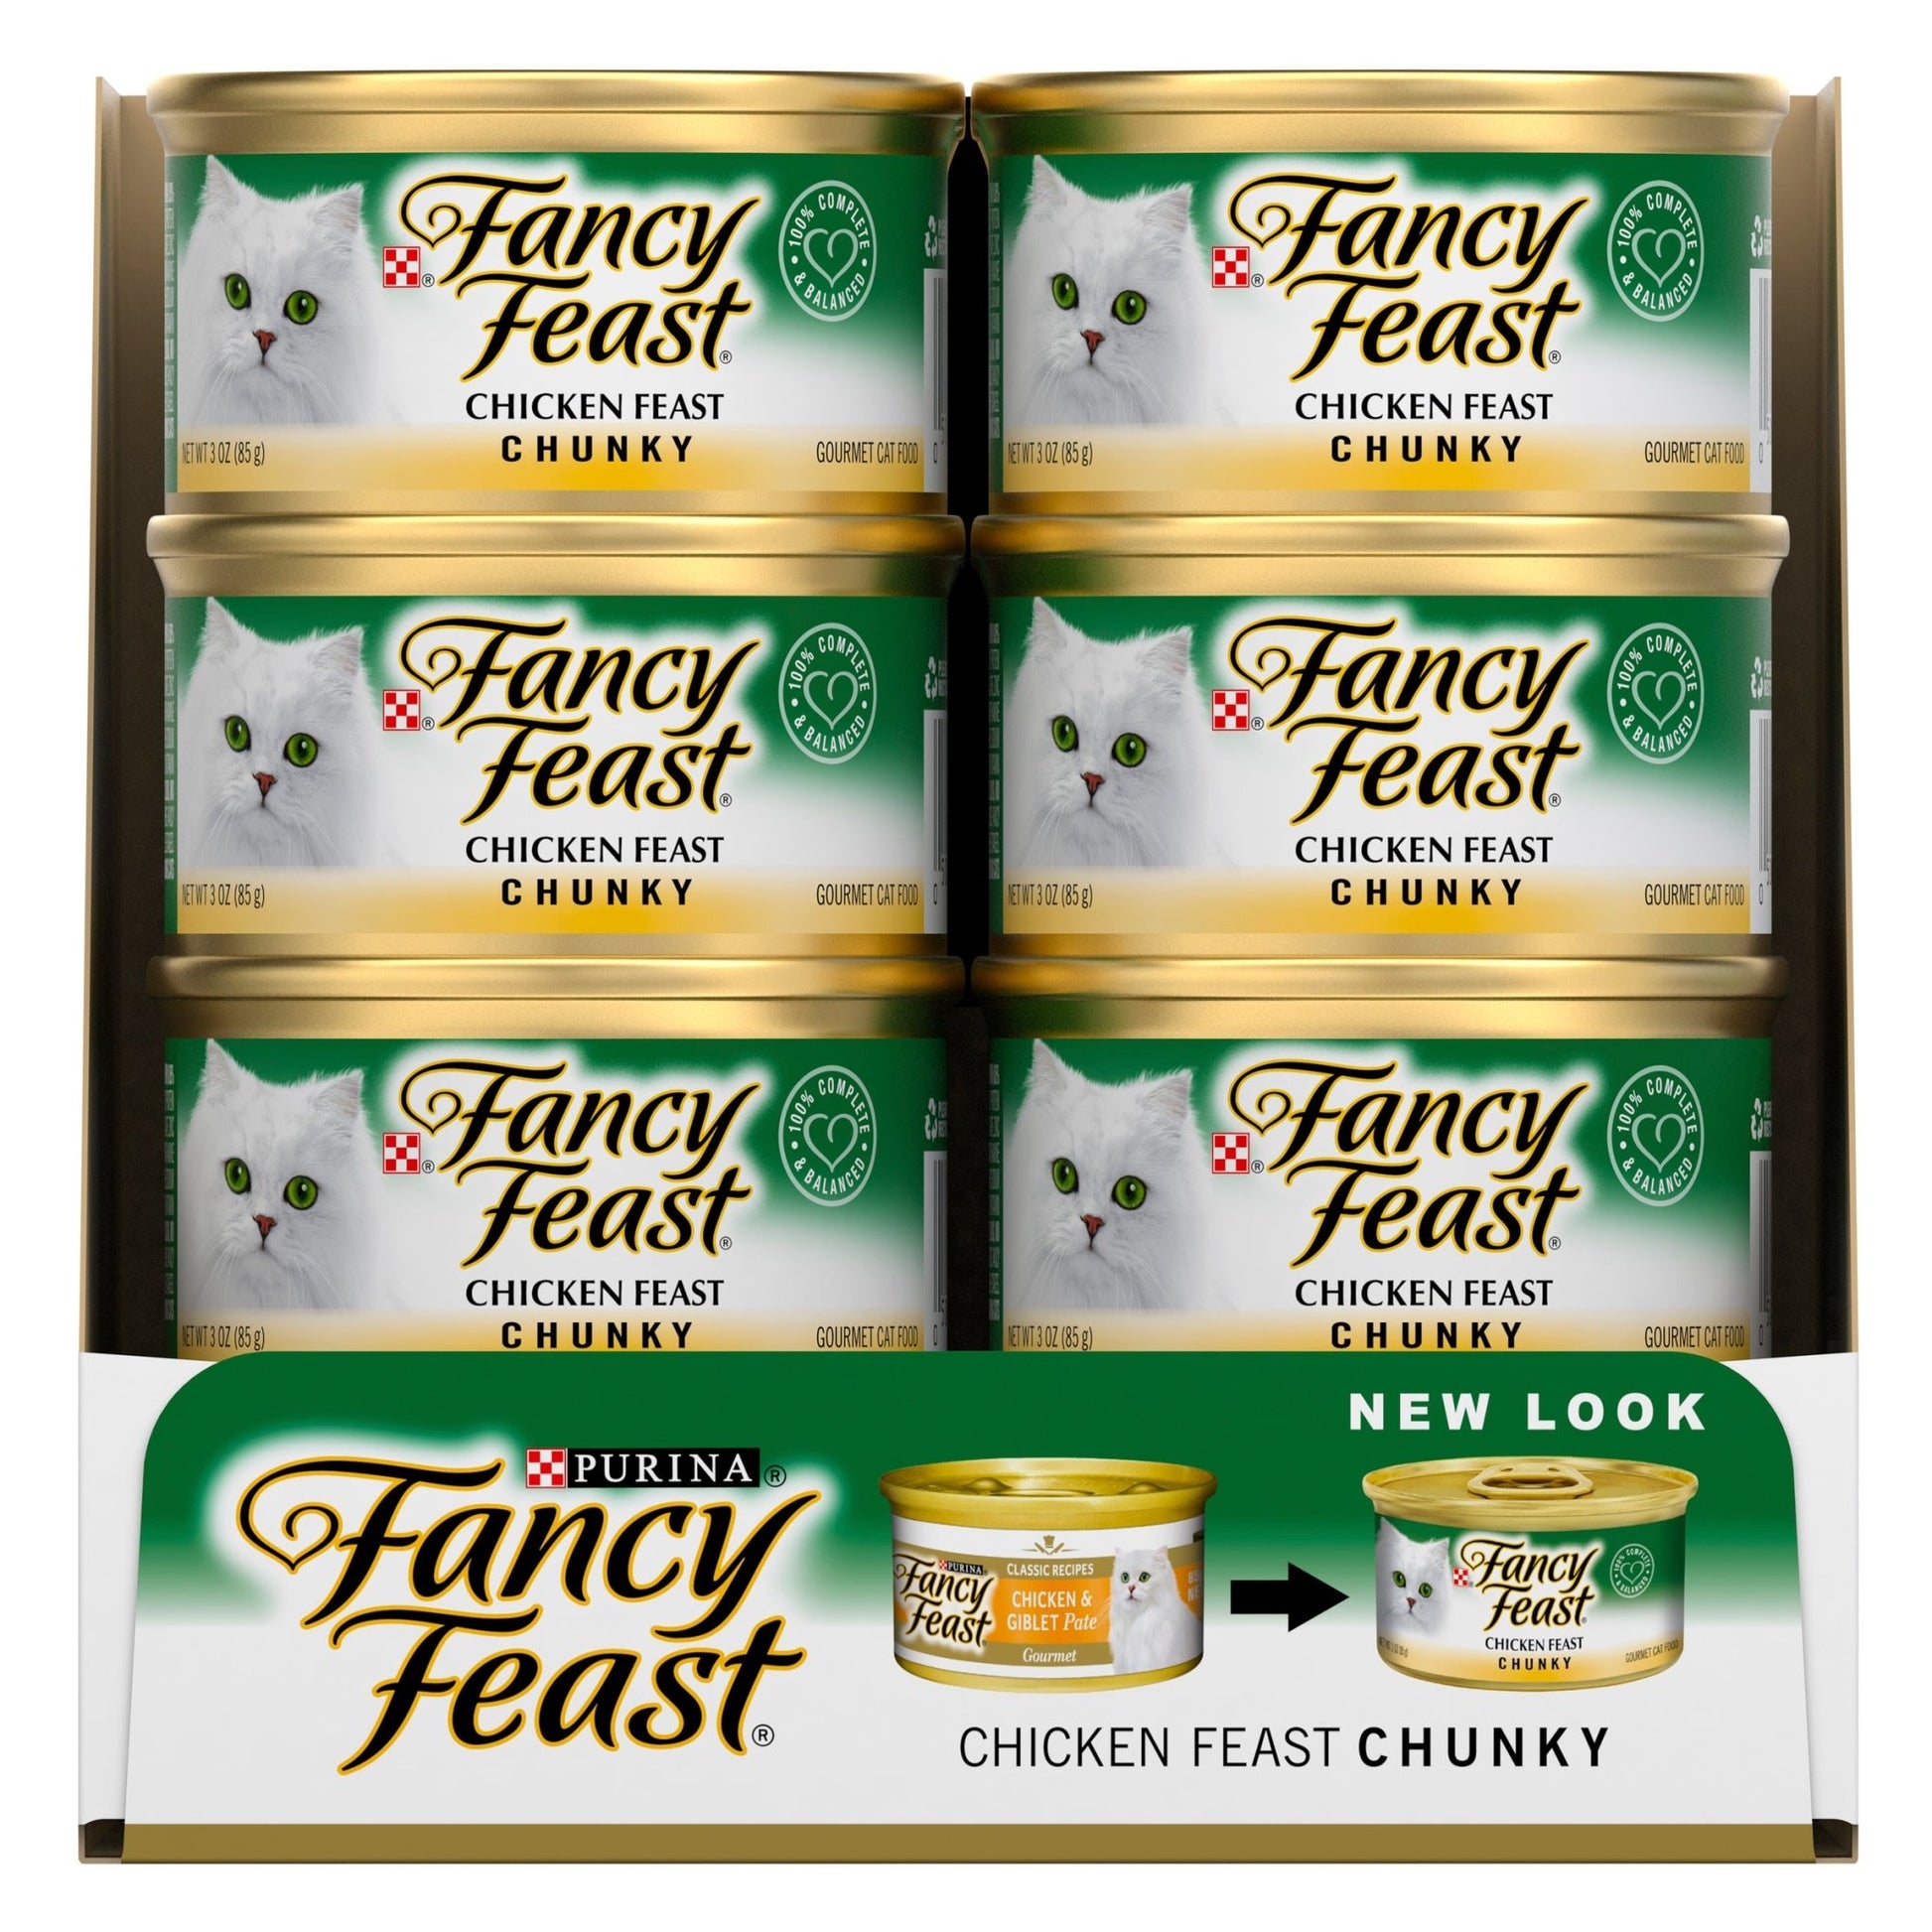 Fancy Feast Chunky Chicken Feast 24x85g - Woonona Petfood & Produce